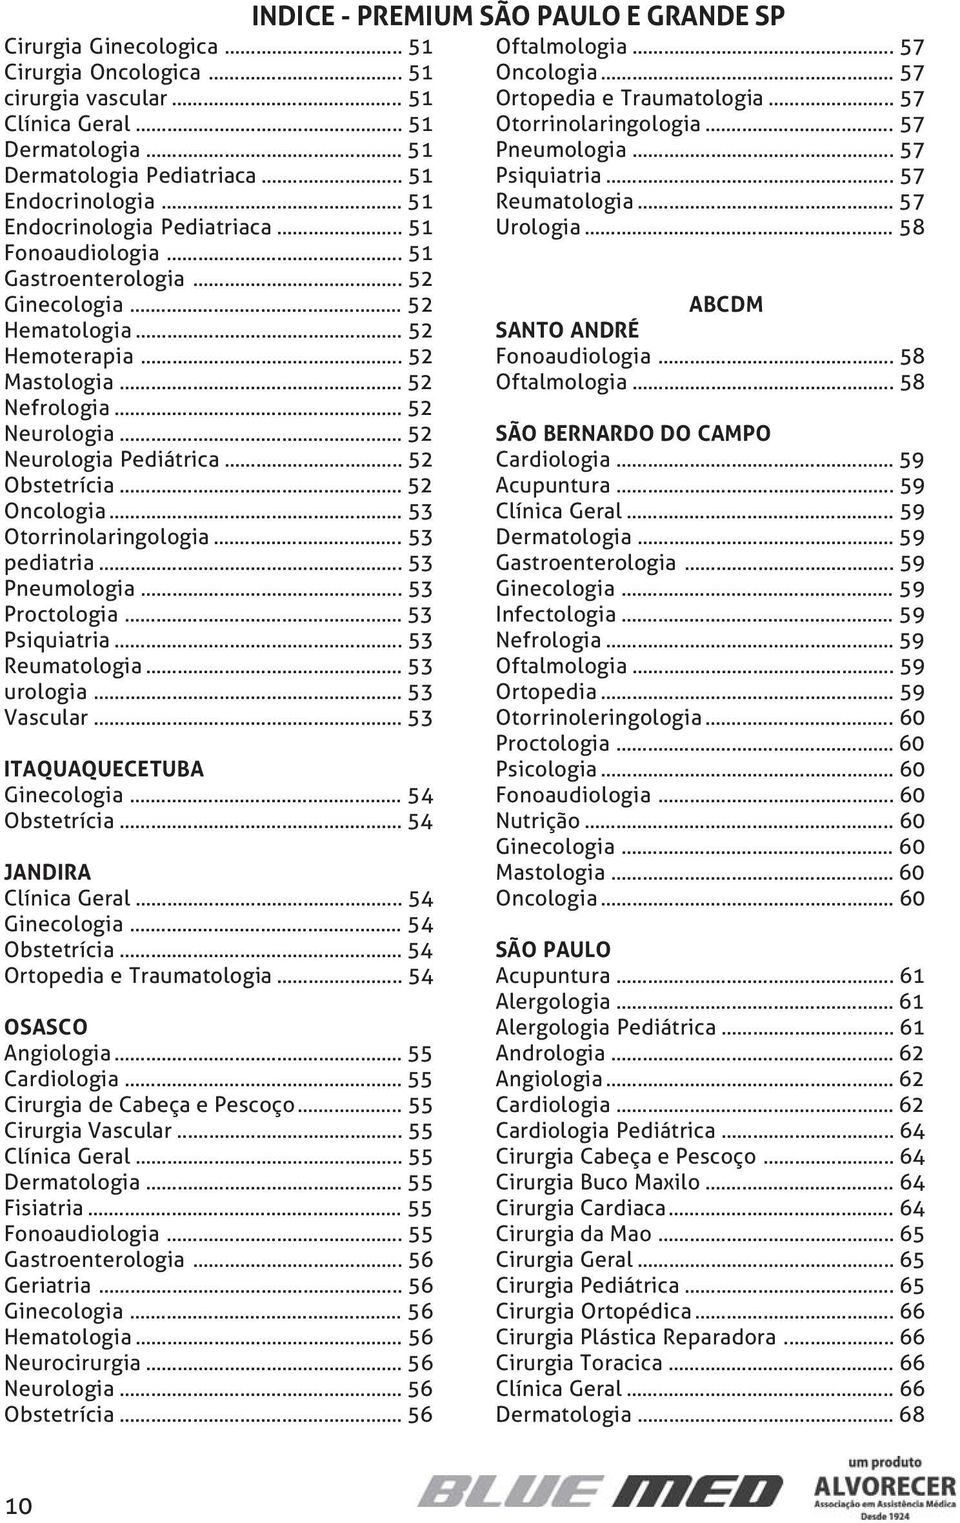 .. 52 Oncologia... 53 Otorrinolaringologia... 53 pediatria... 53 Pneumologia... 53 Proctologia... 53 Psiquiatria... 53 Reumatologia... 53 urologia... 53 Vascular... 53 ITAQUAQUECETUBA Ginecologia.